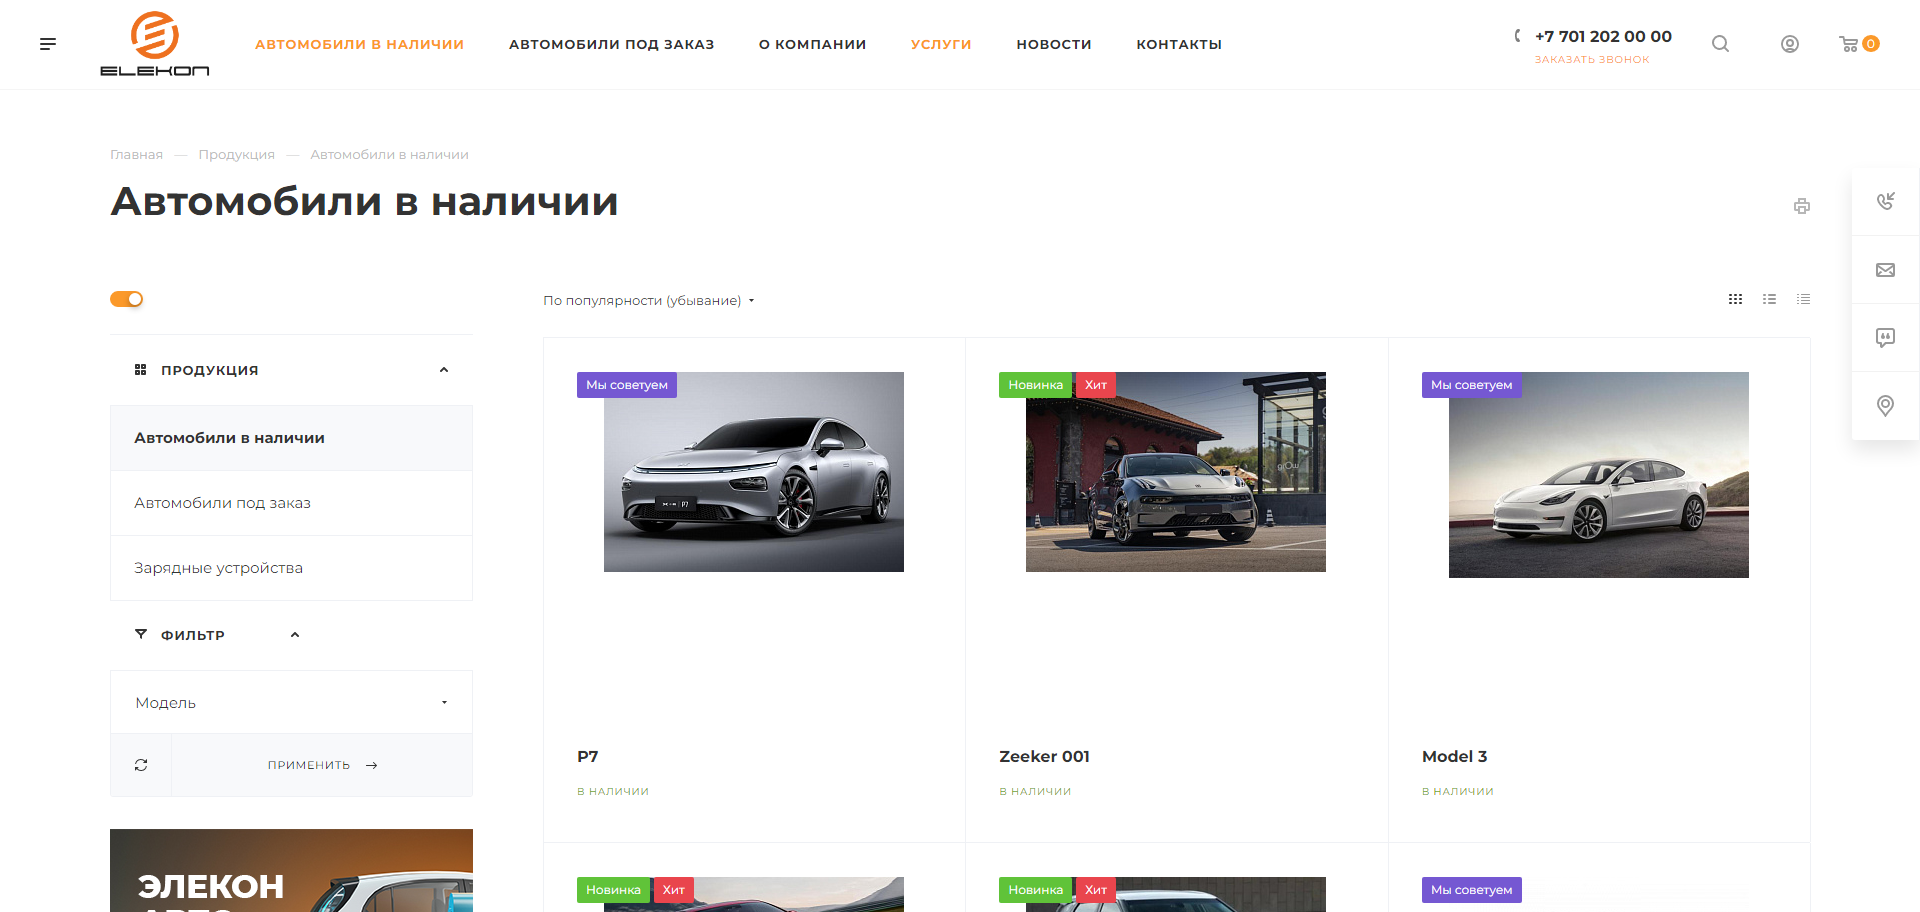 сайт по продаже электромобилей в казахстане